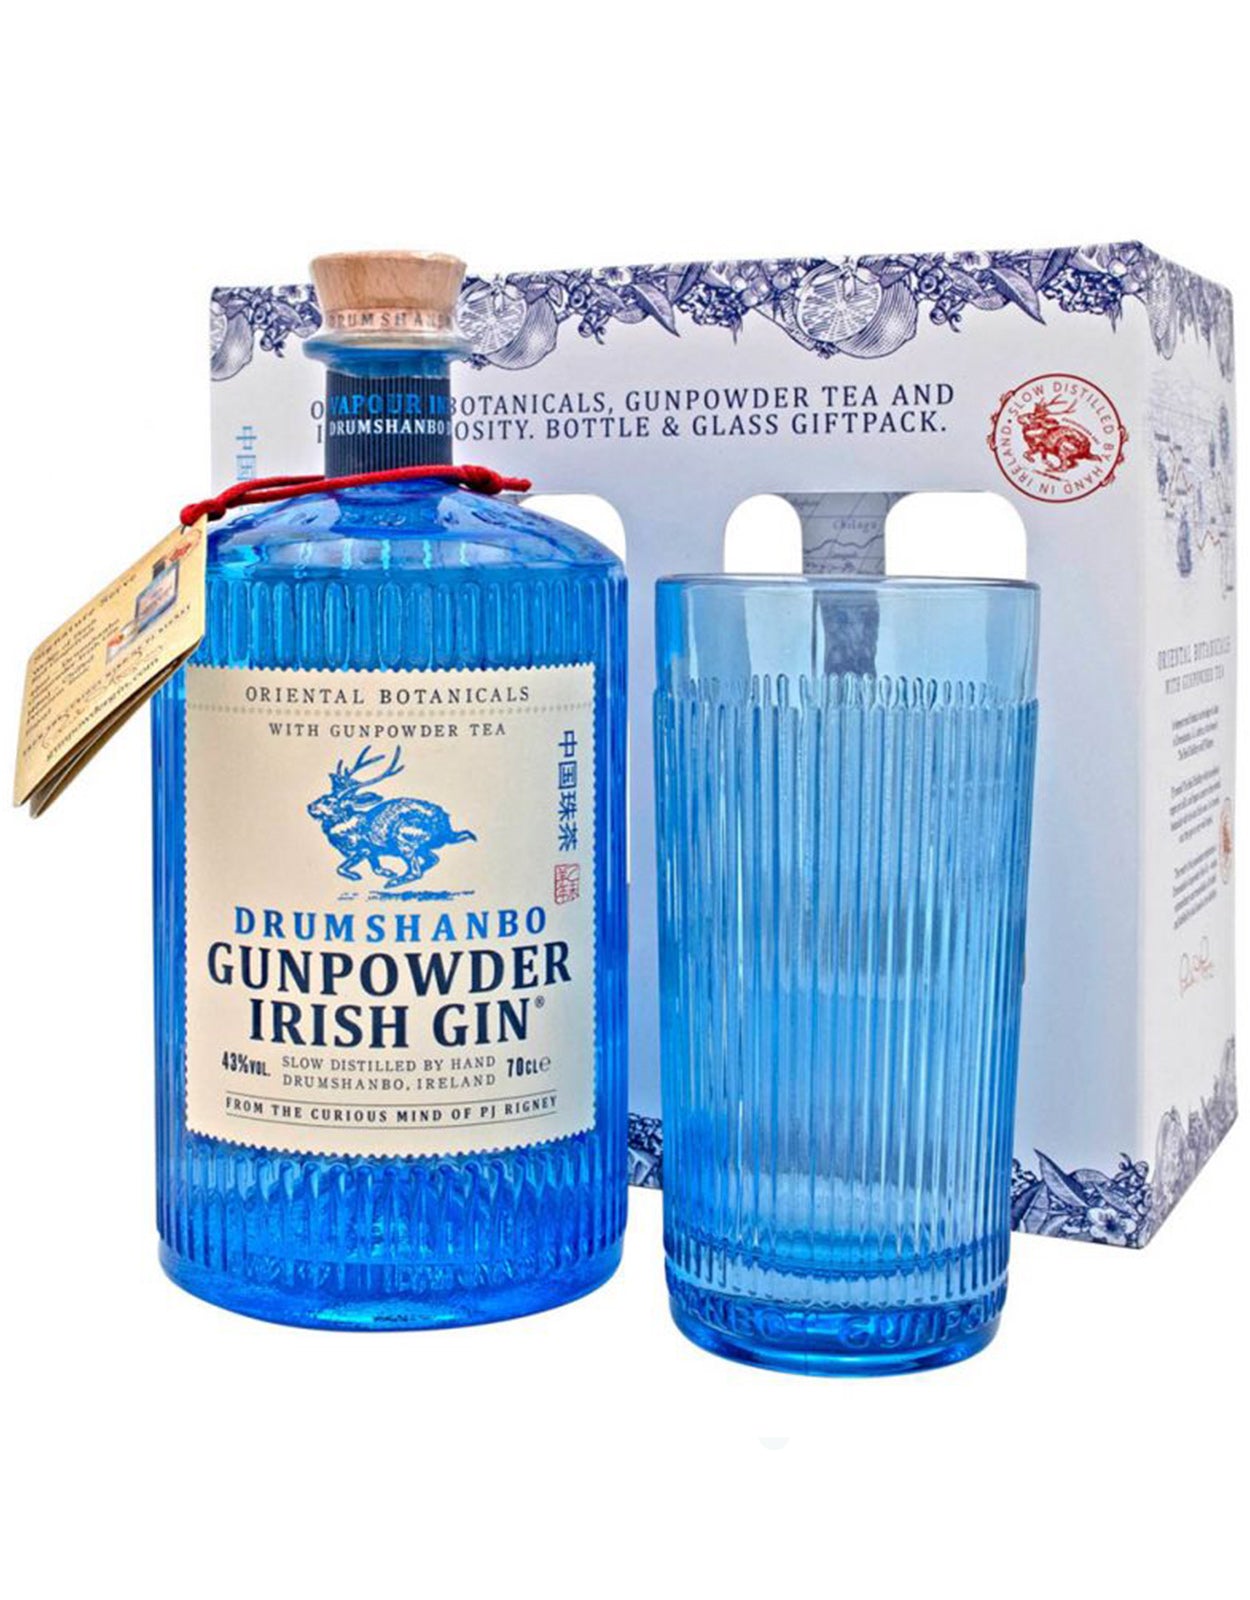 Drumshanbo Gunpowder Irish Gin  - Gift Pack (1 Glass)